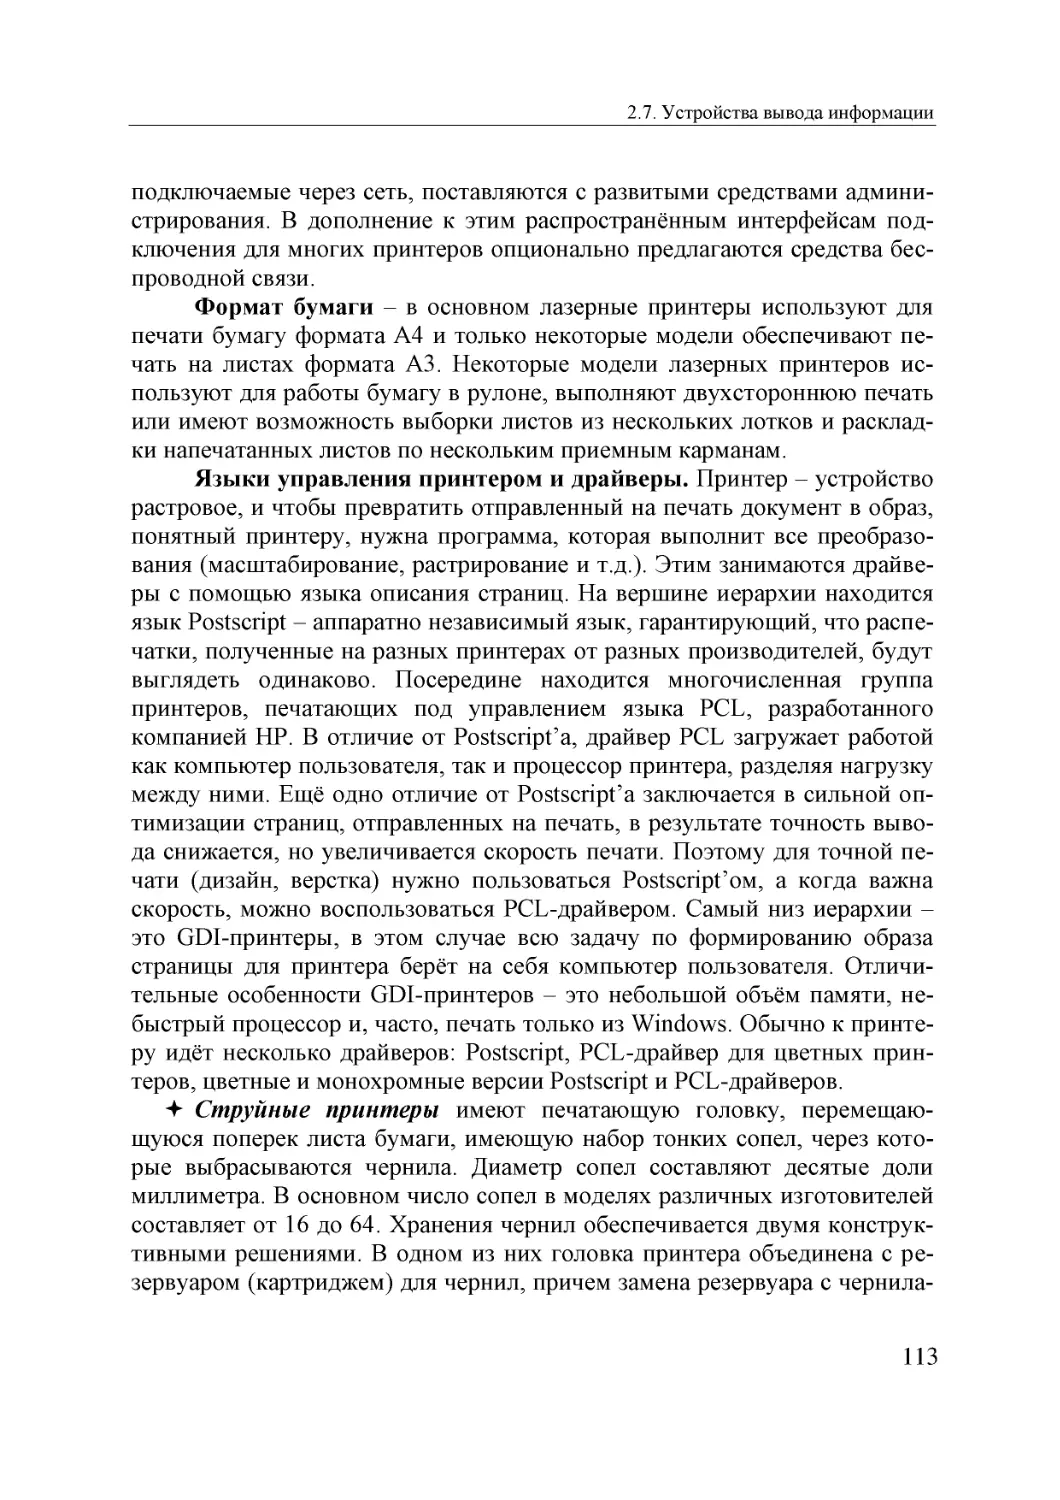 Informatika_Uchebnik_dlya_vuzov_2010 113